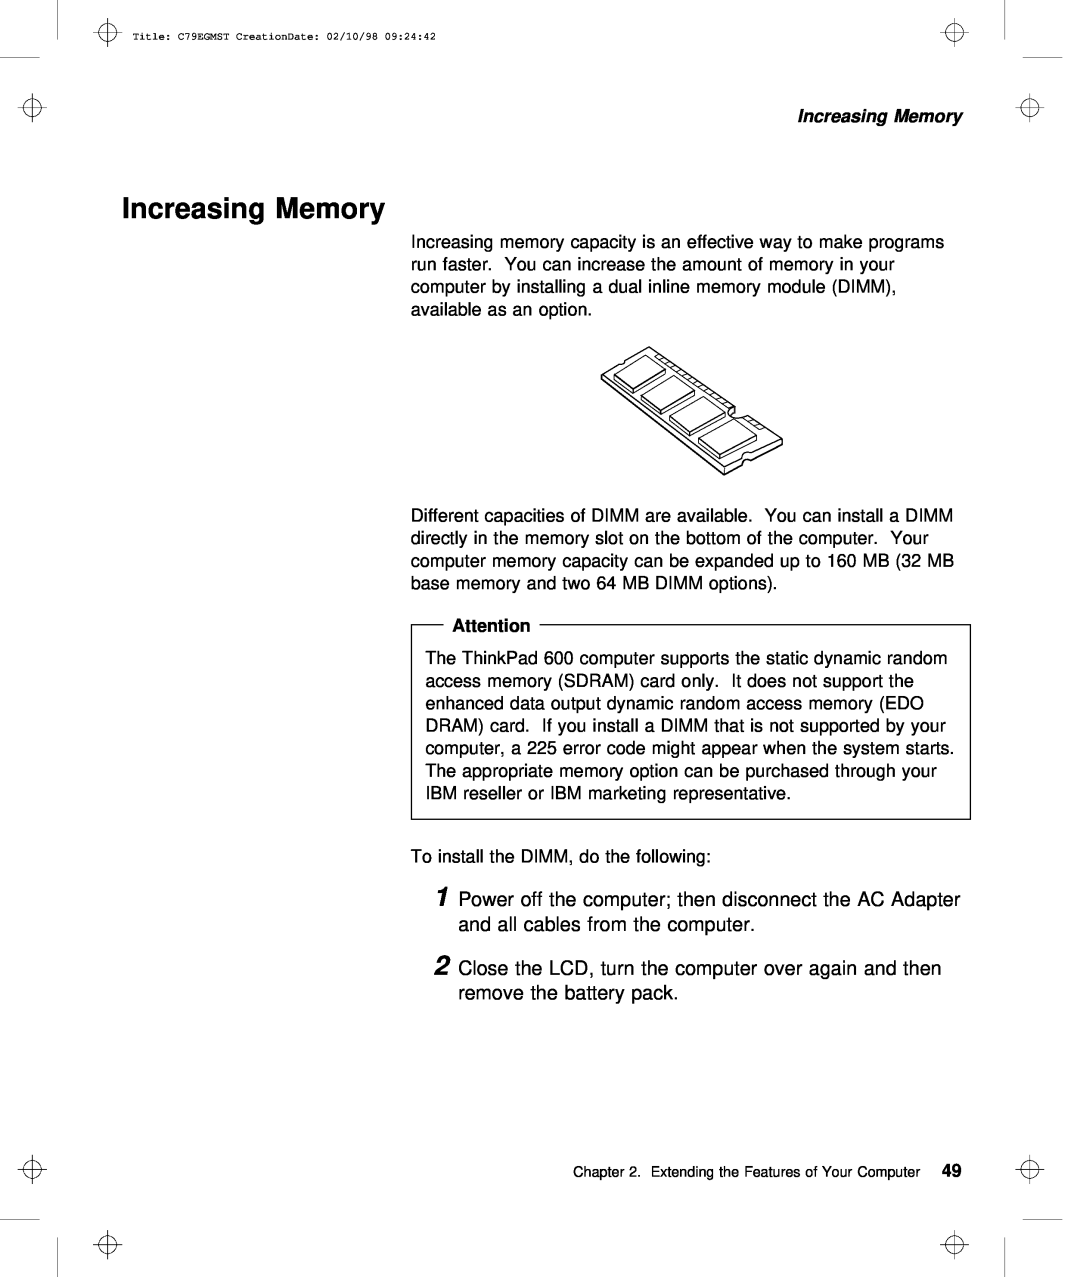 IBM C79EGMST manual Increasing Memory 